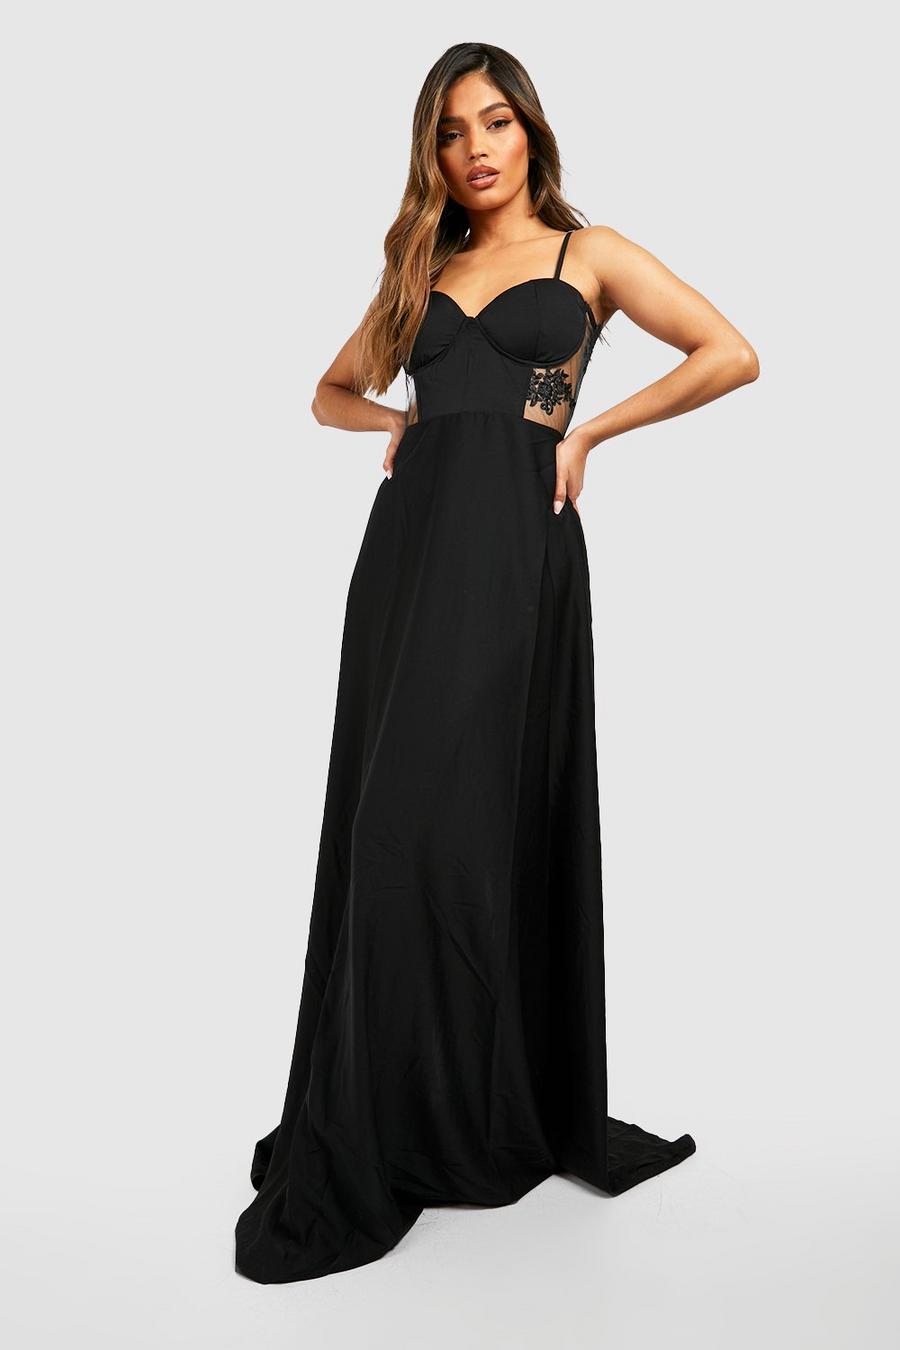  Lace Black Dresses